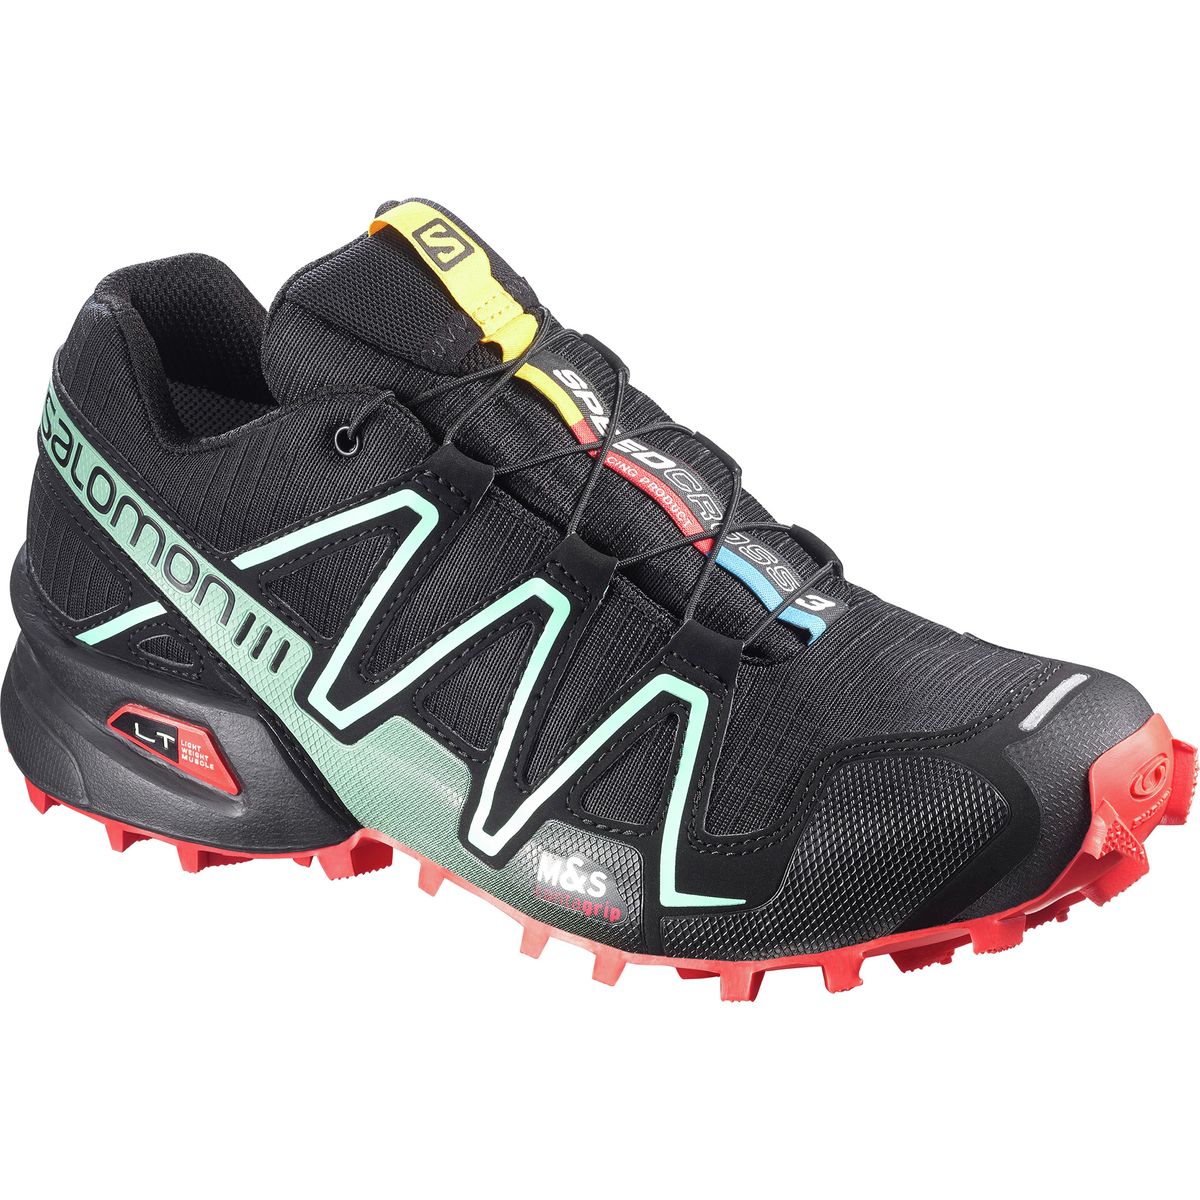 Salomon Speedcross 3 Trail Running Shoe - Women's | eBay